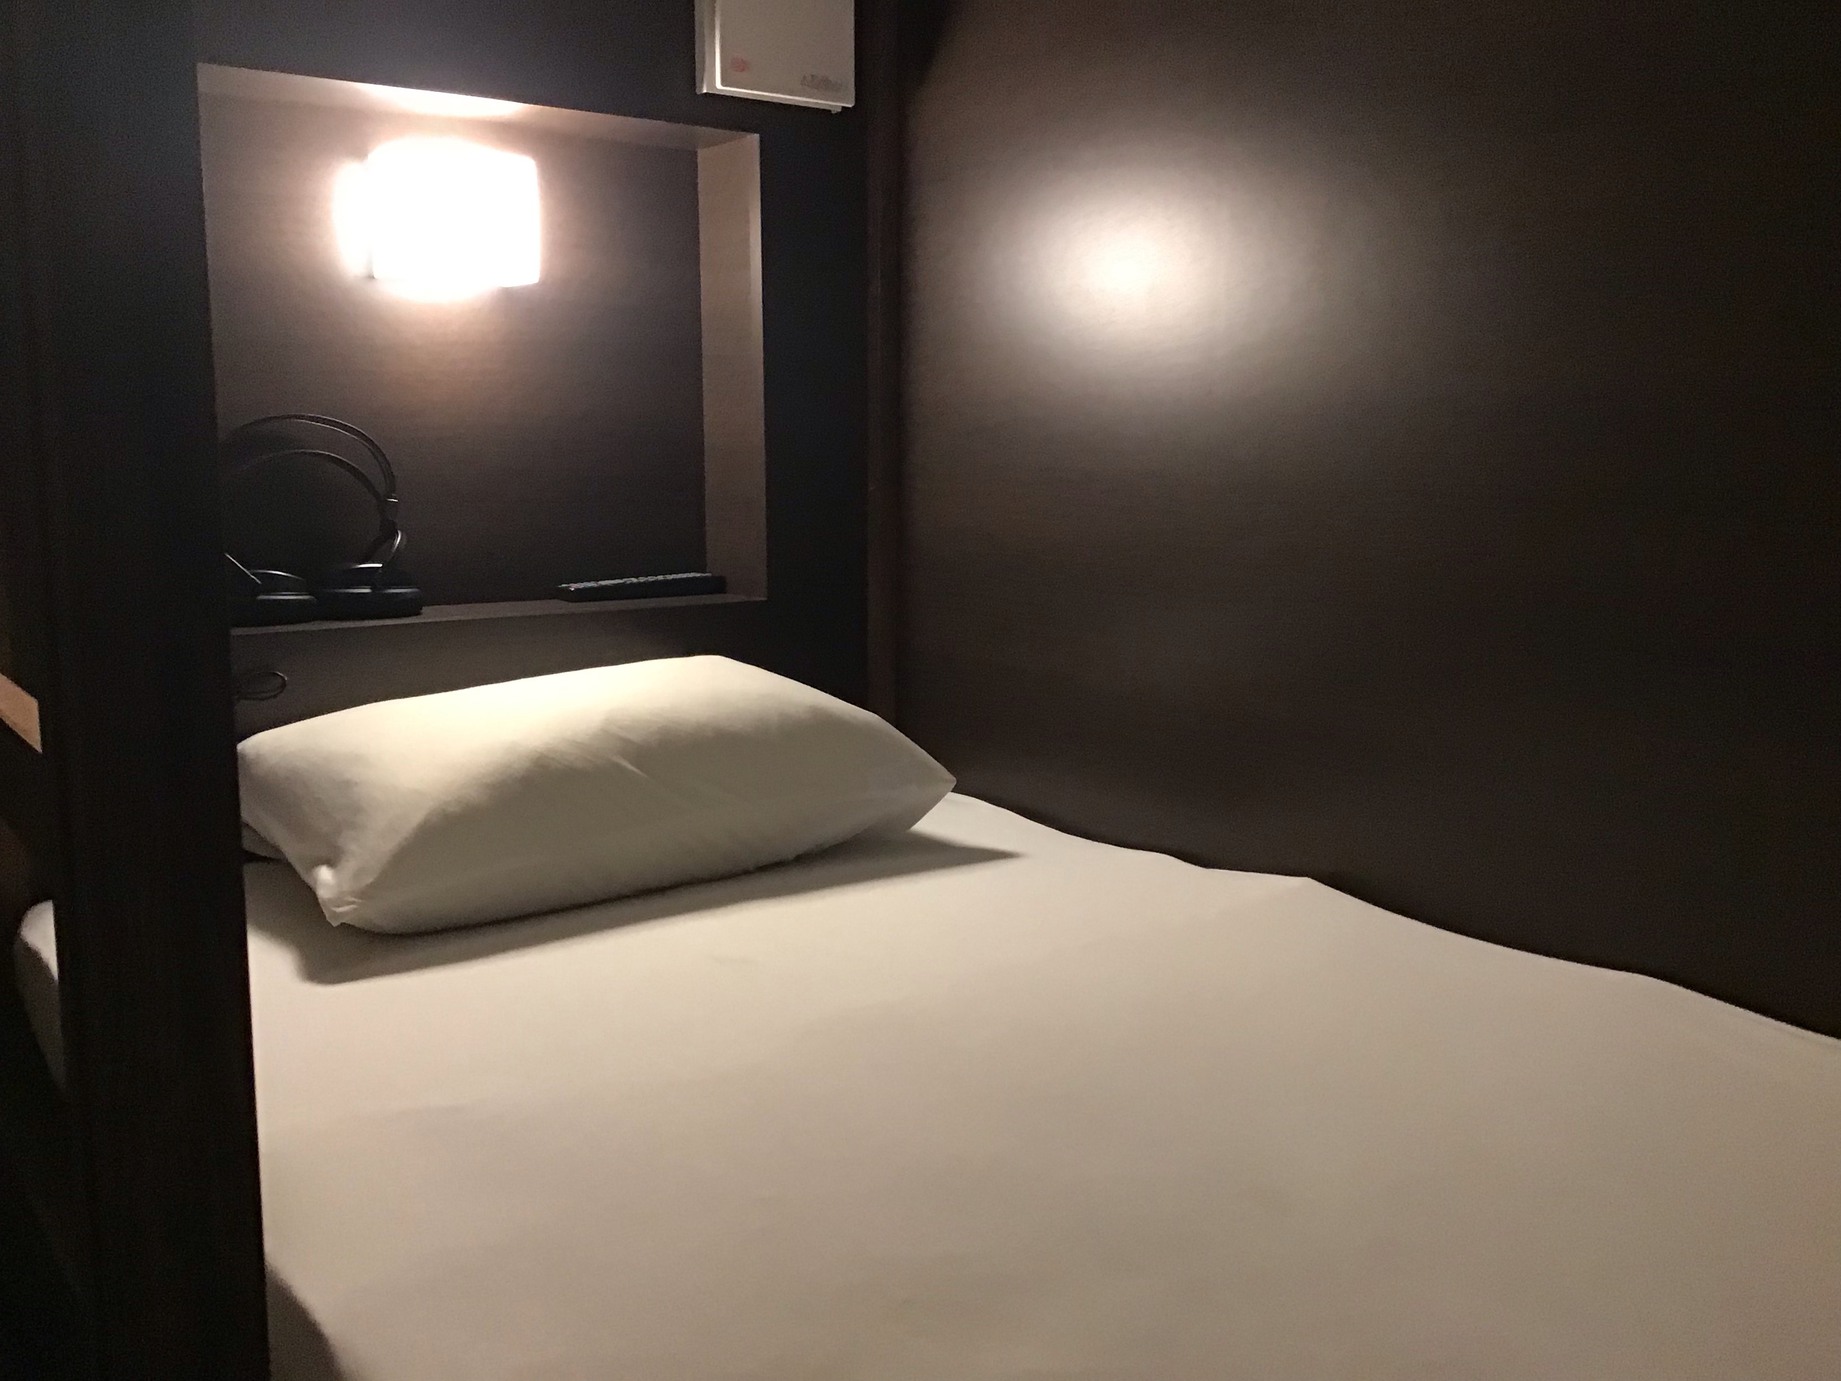 熊本で唯一の完全女性専用フロアプライベートカプセルAタイプ寝具